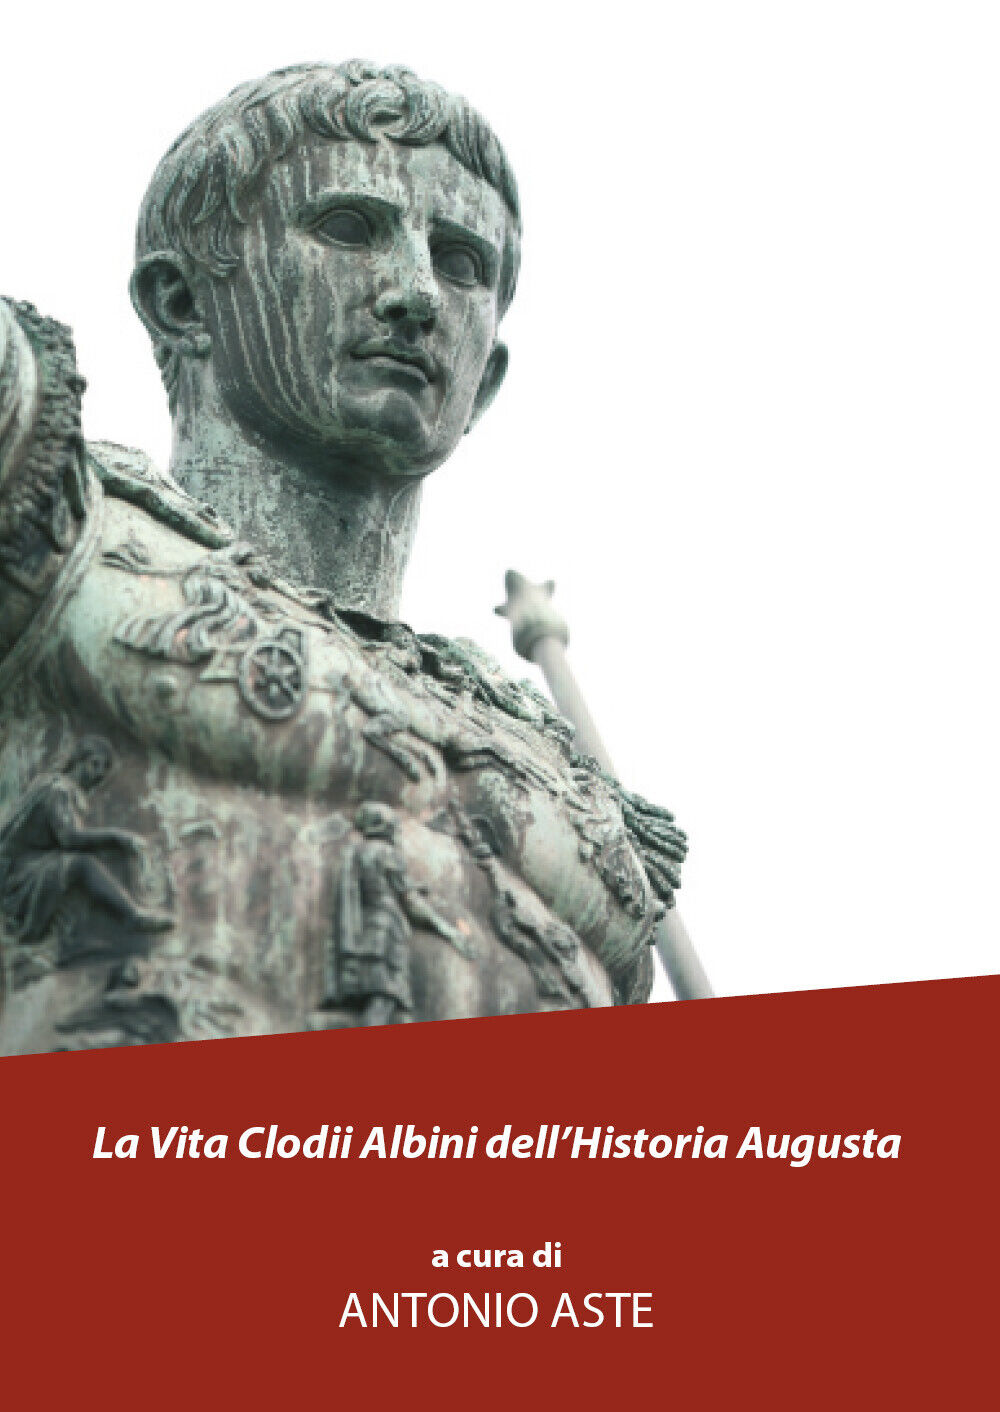 La vita Clodii Albini delL'historia Augusta di Antonio Aste, 2021, Youcanprint